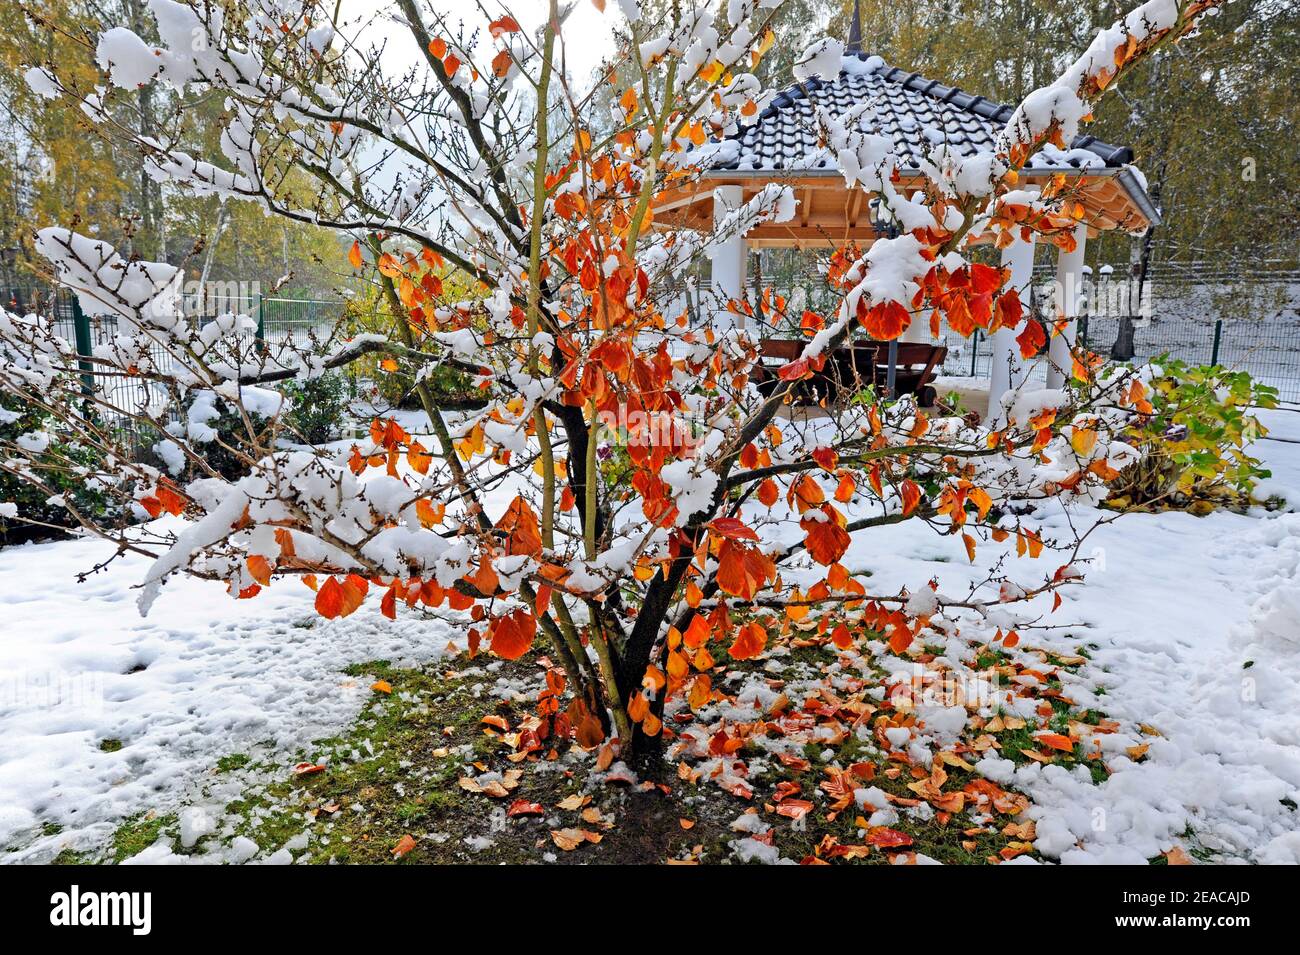 Bois ornementaux enneigés, noisette de sorcière avec feuilles d'automne colorées, dans le jardin d'hiver rural Banque D'Images